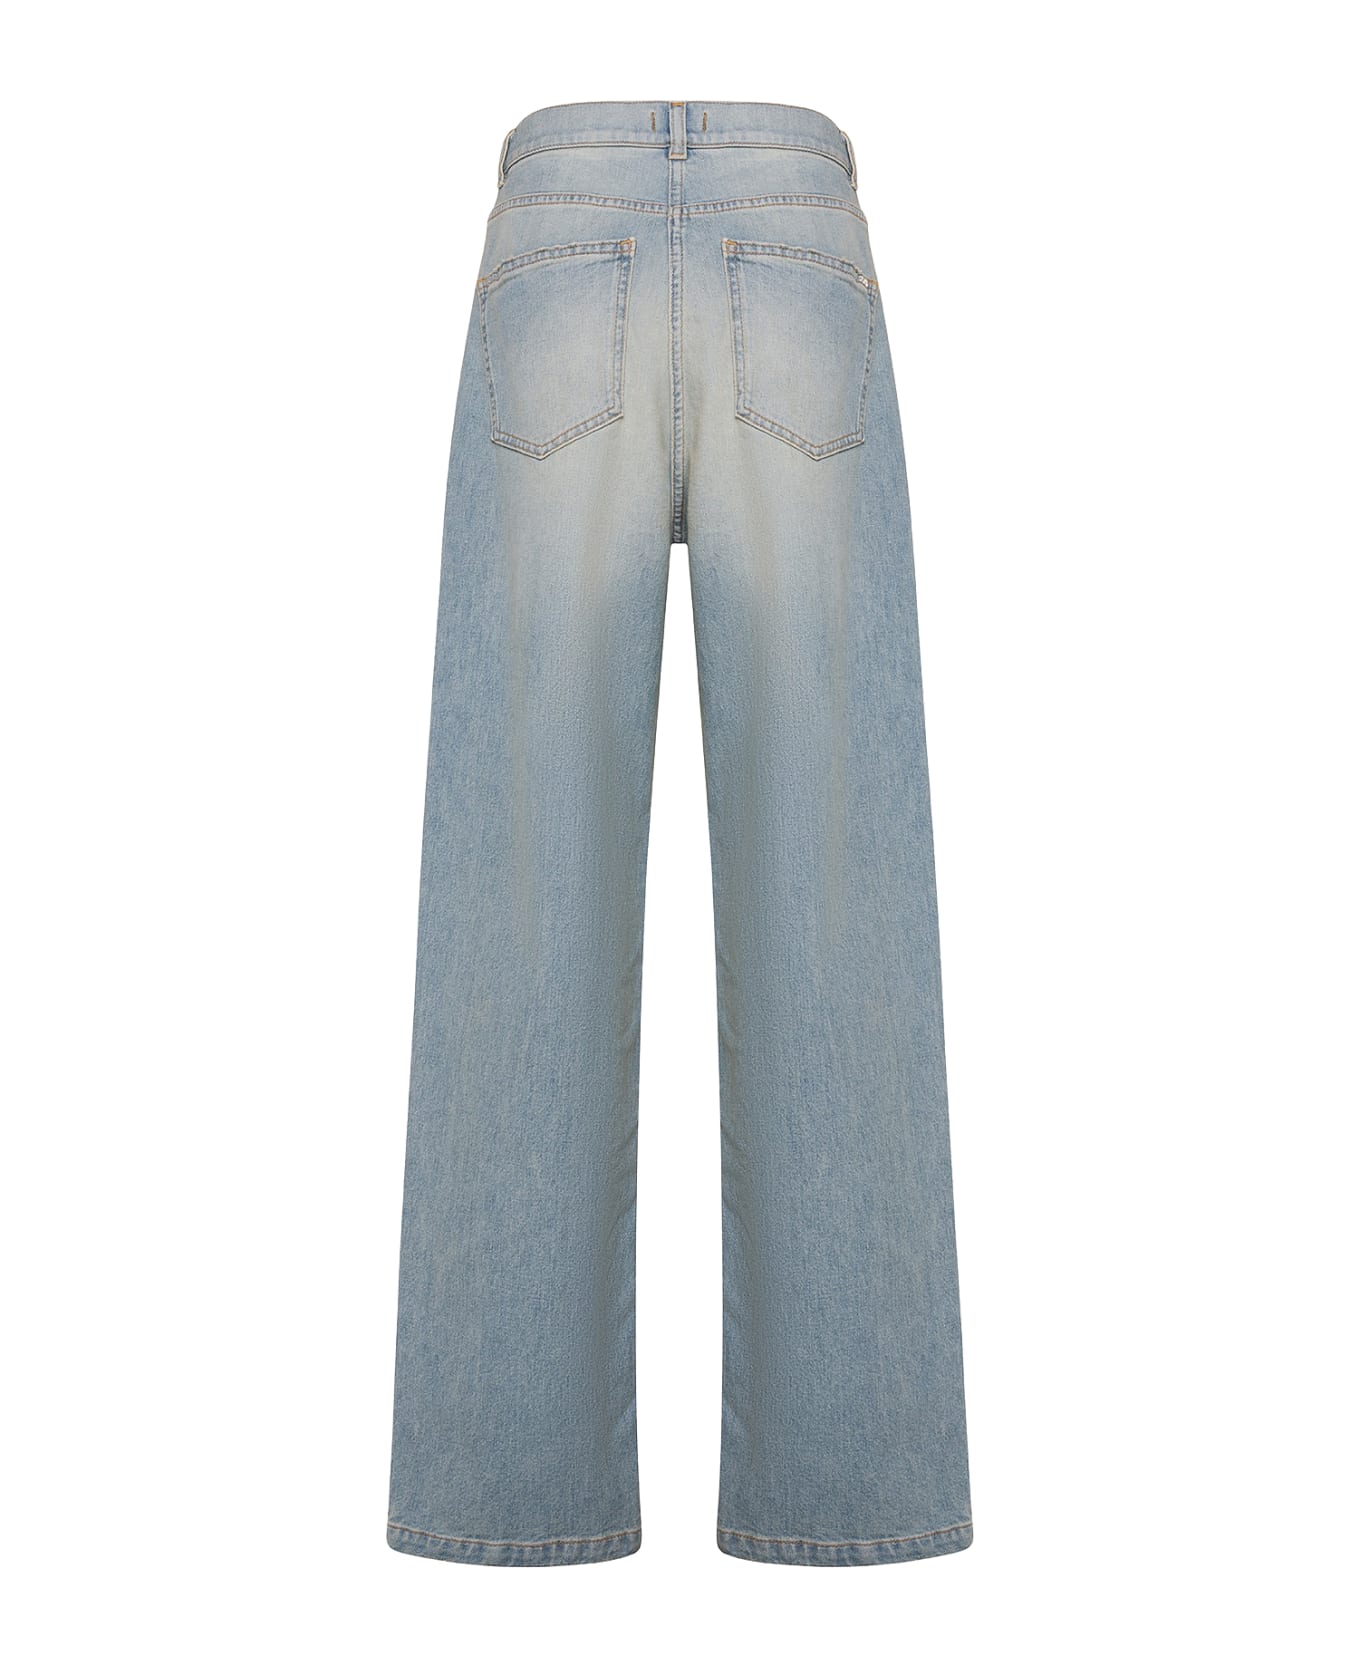 Seventy High-waisted Jeans In Light Denim - AZZURRO